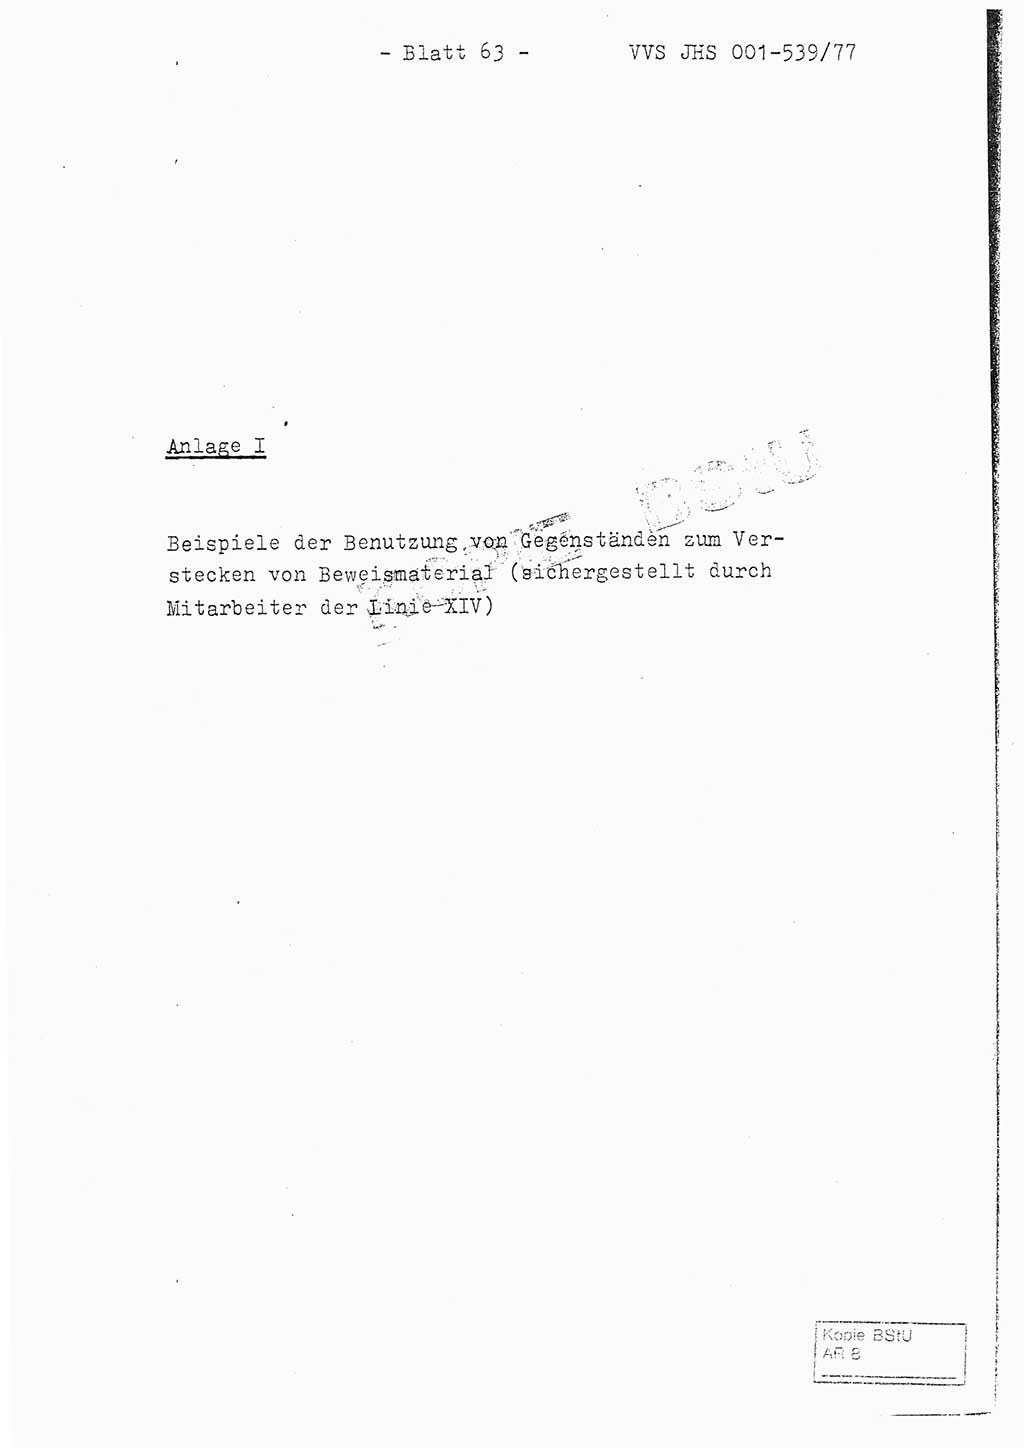 Fachschulabschlußarbeit Hauptmann Dietrich Jung (Abt. ⅩⅣ), Leutnant Klaus Klötzner (Abt. ⅩⅣ), Ministerium für Staatssicherheit (MfS) [Deutsche Demokratische Republik (DDR)], Juristische Hochschule (JHS), Vertrauliche Verschlußsache (VVS) 001-539/77, Potsdam 1978, Seite 63 (FS-Abschl.-Arb. MfS DDR JHS VVS 001-539/77 1978, S. 63)